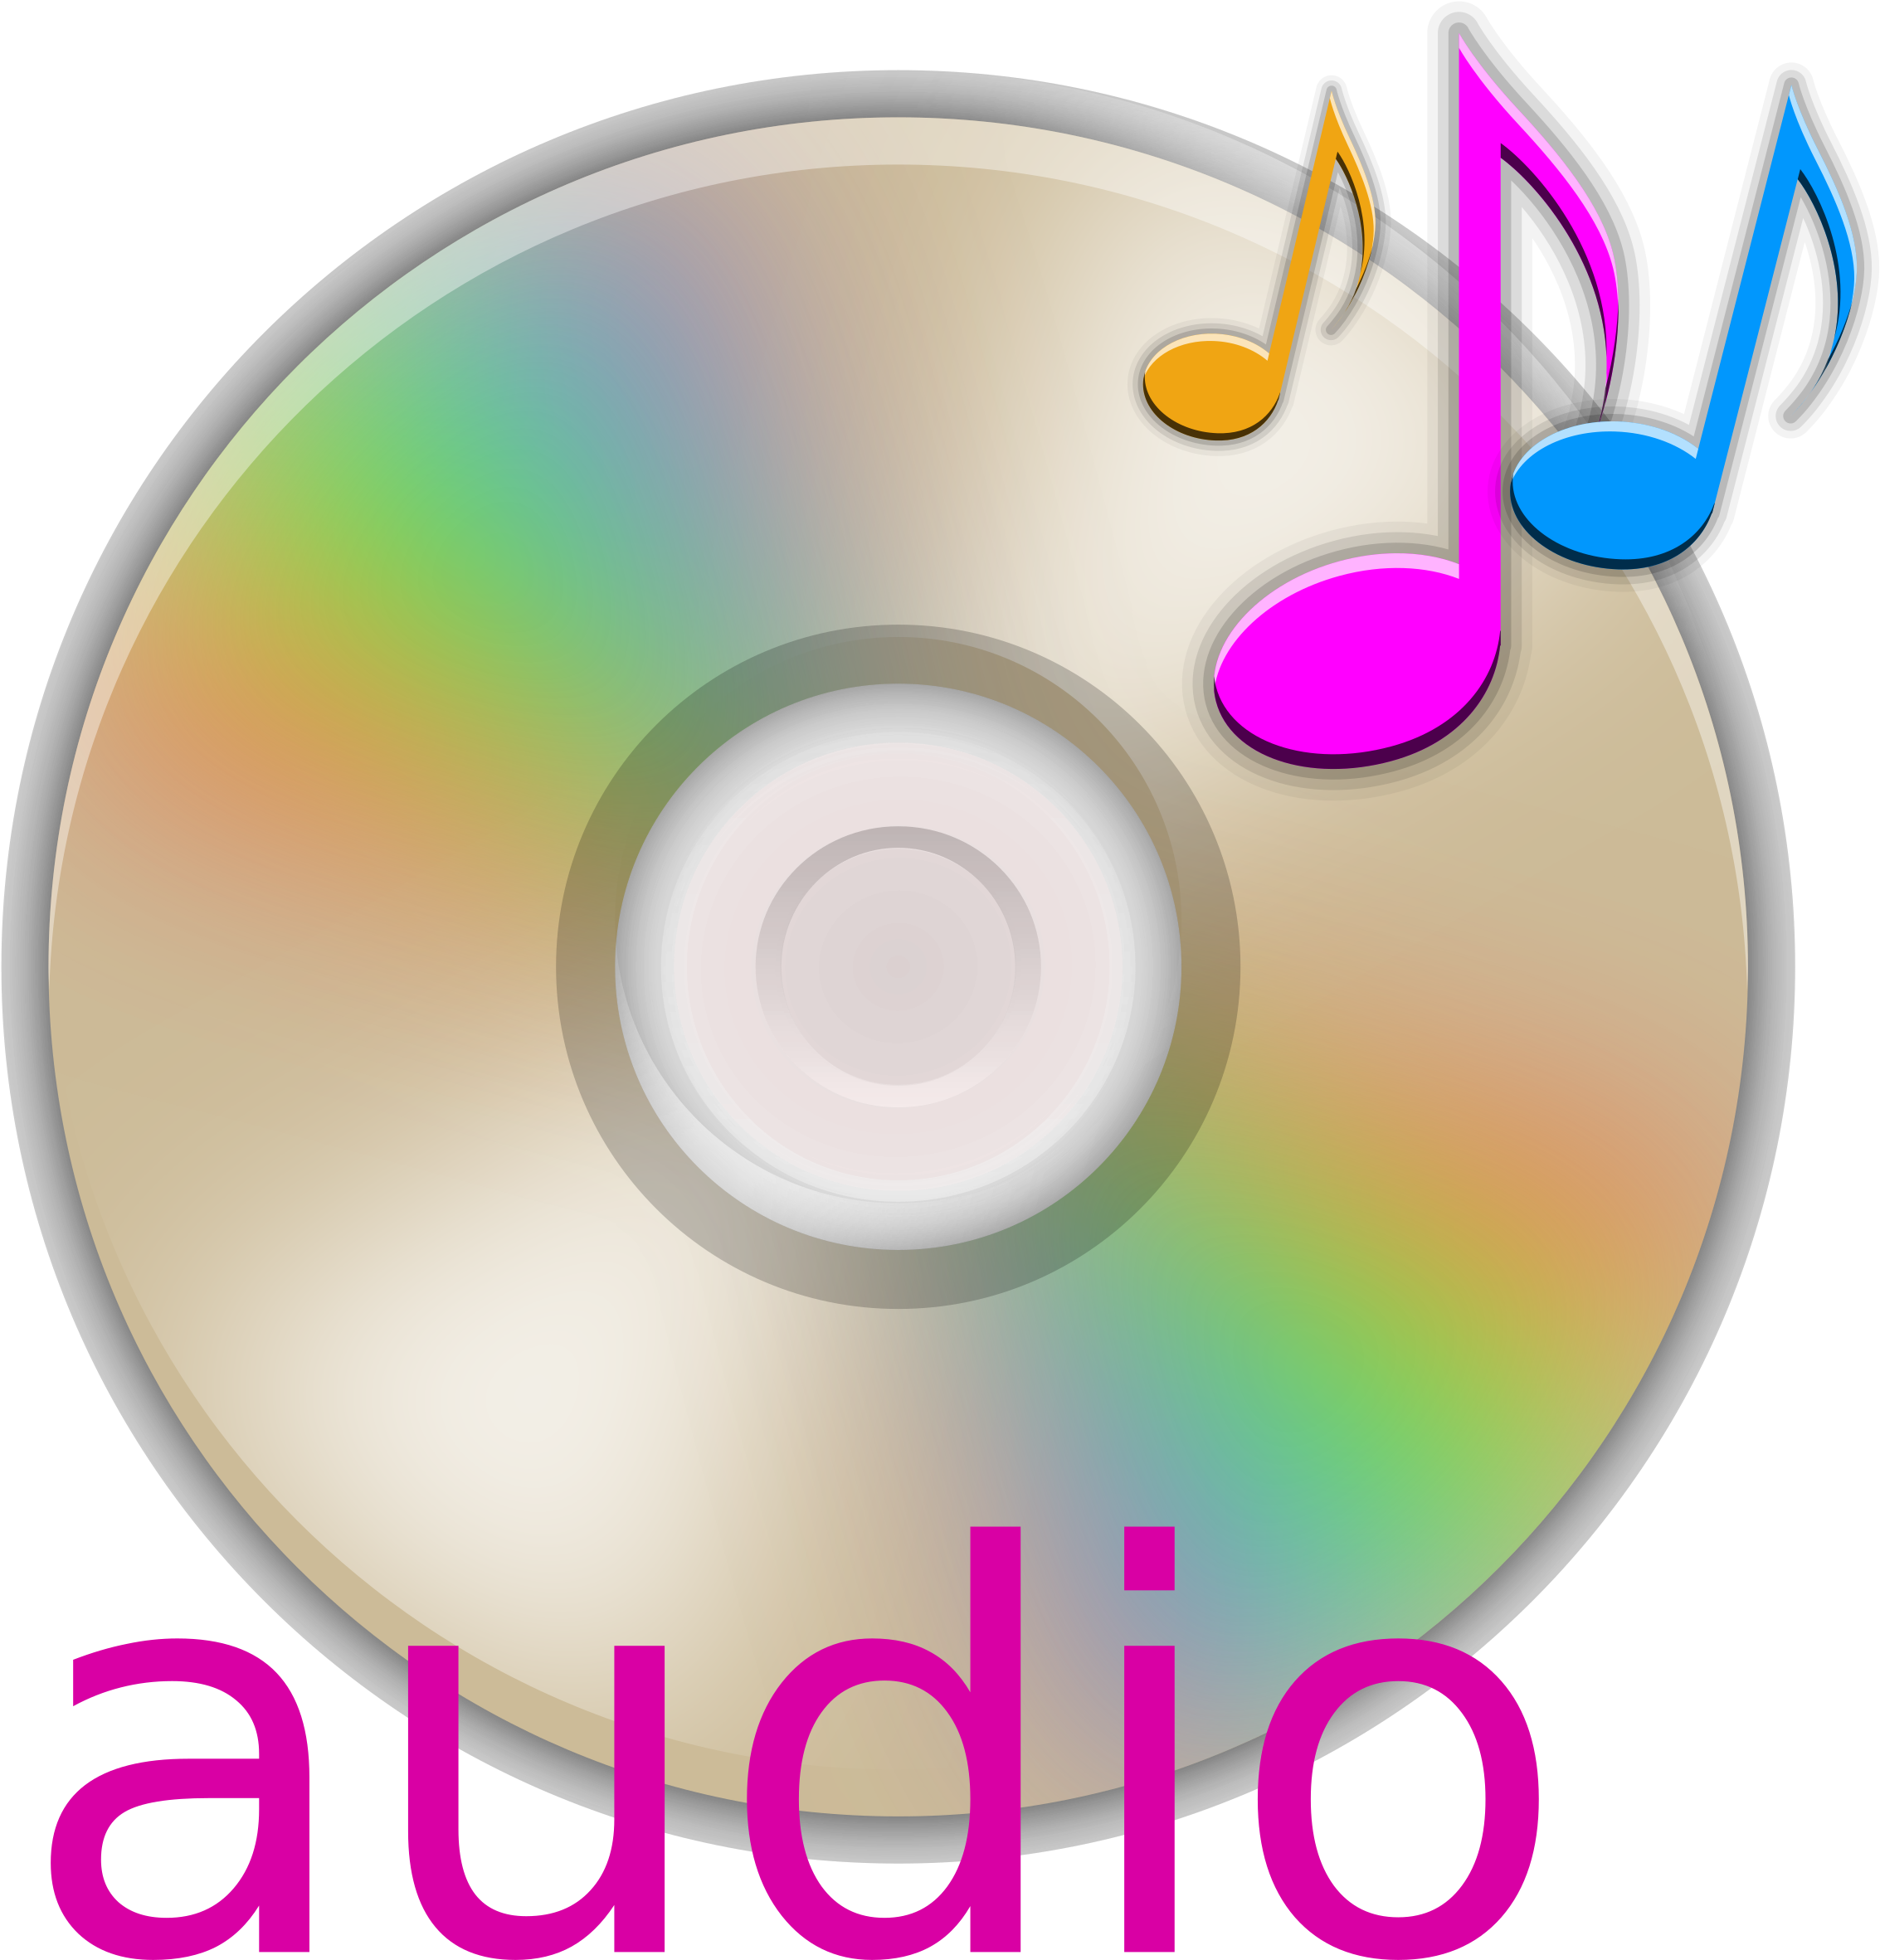 Mp3 звучание. Музыкальный диск. Музыкальные CD диски. Аудио СД диск. Звуковой компакт-диск.